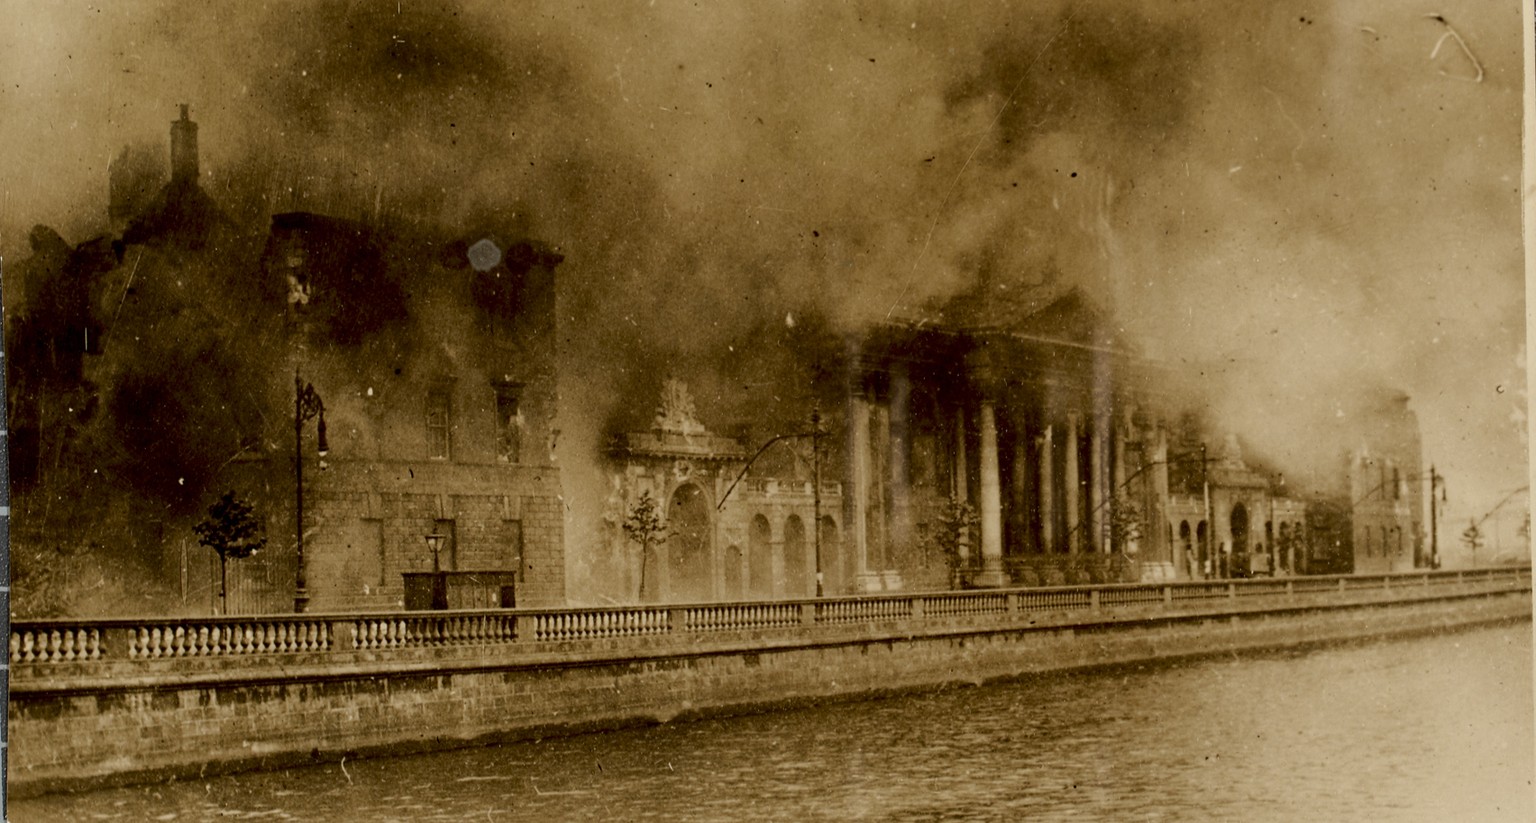 Brennendes Gerichtsgebäude während der Schlacht von Dublin
bild: https://de.wikipedia.org/wiki/Irischer_B%C3%BCrgerkrieg#/media/File:Four_Courts_Conflagration.jpg